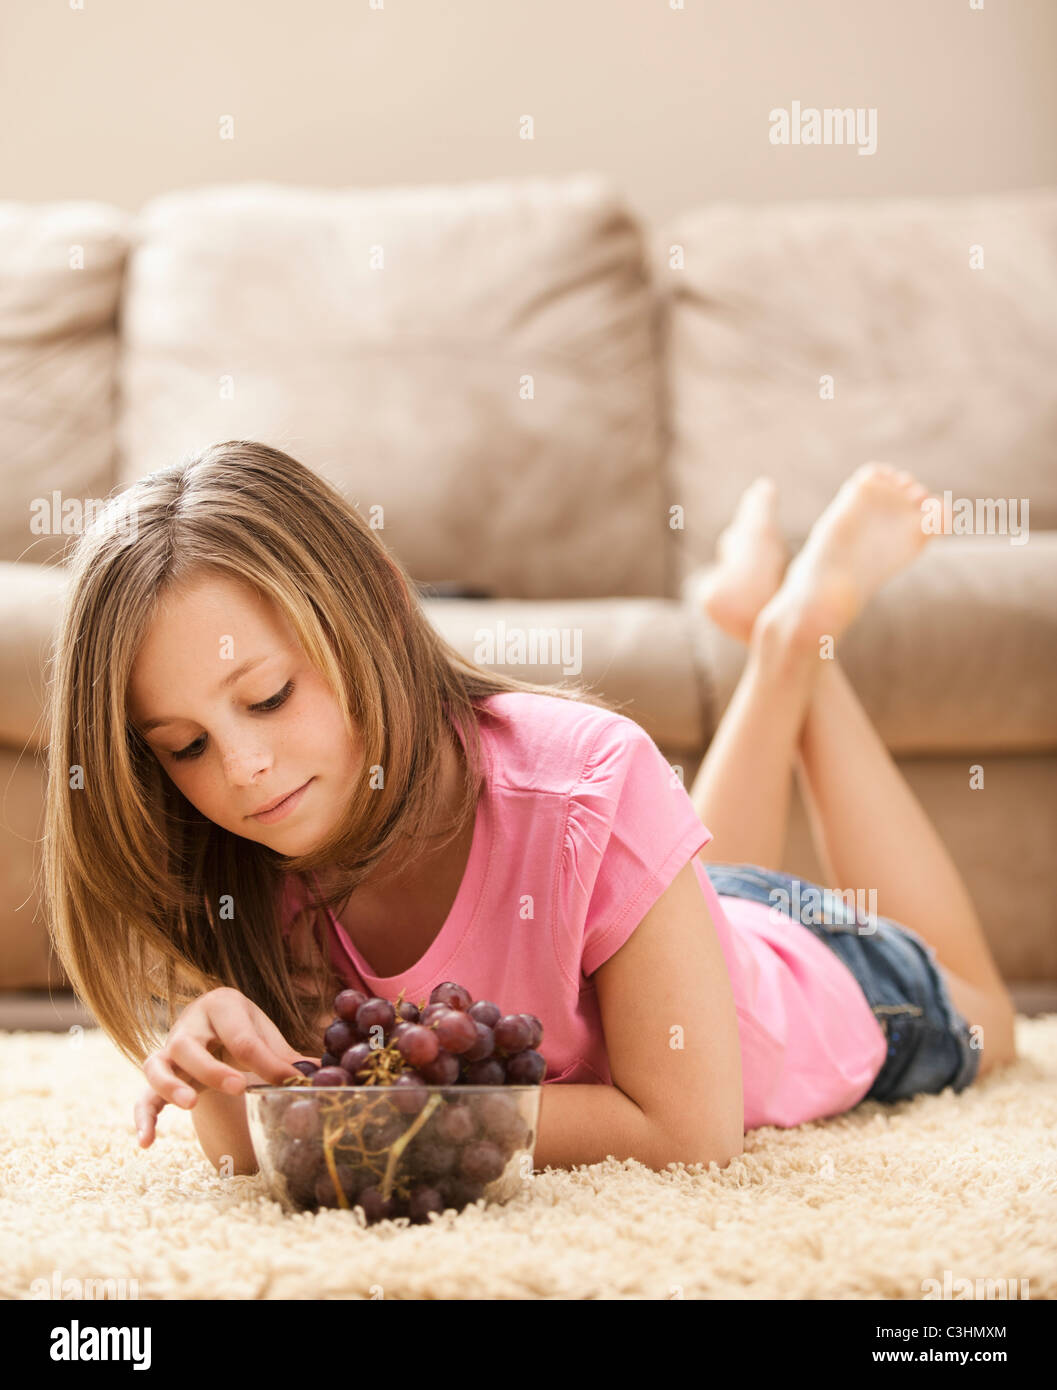 Mädchen (10-11) auf Boden essen Trauben Stockfoto